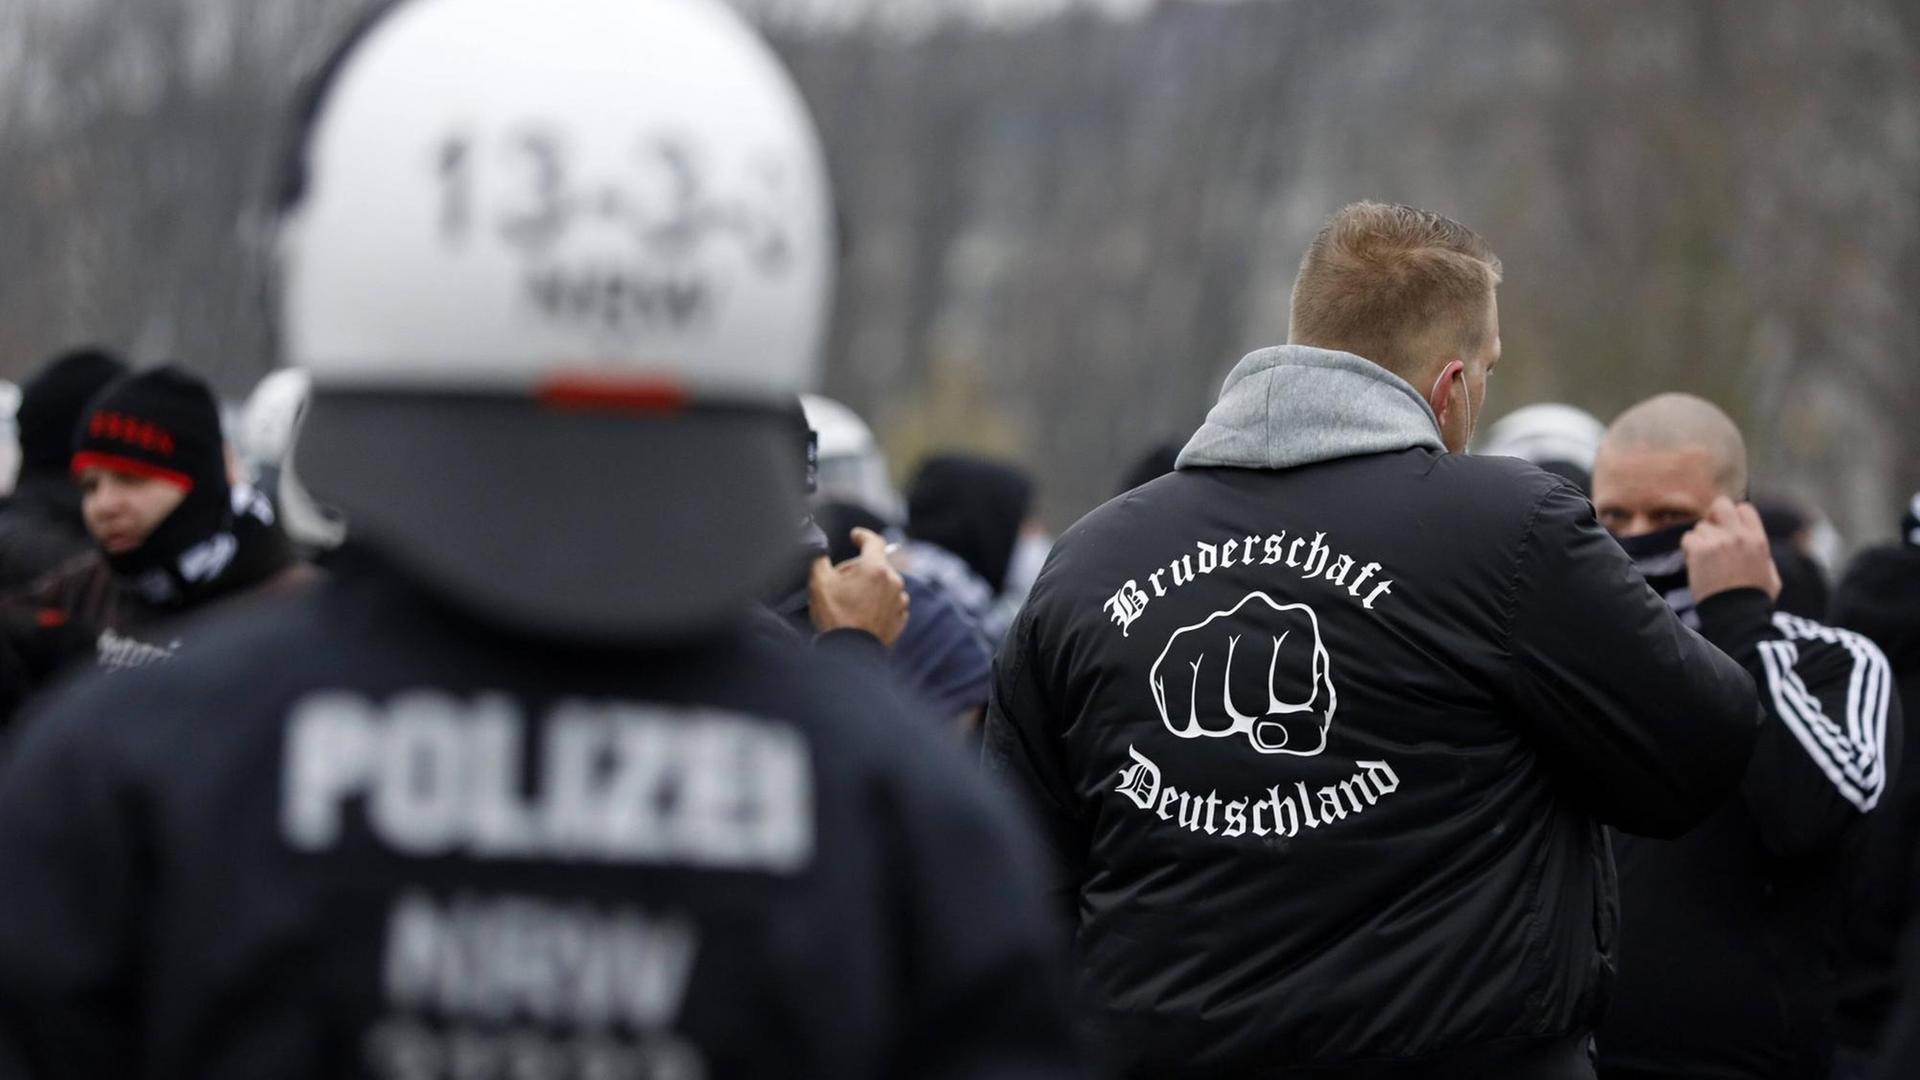 Polizisten kesseln eine Gruppe Hooligans auf der Querdenken-Demo im Rheinpark Golzheim ein. Ein Demonstrant trägt eine Jacke mit der Aufschrift "Bruderschaft Deutschland": Eine neonazistische Gruppierung, die hauptsächlich in Düsseldorf tätig ist.